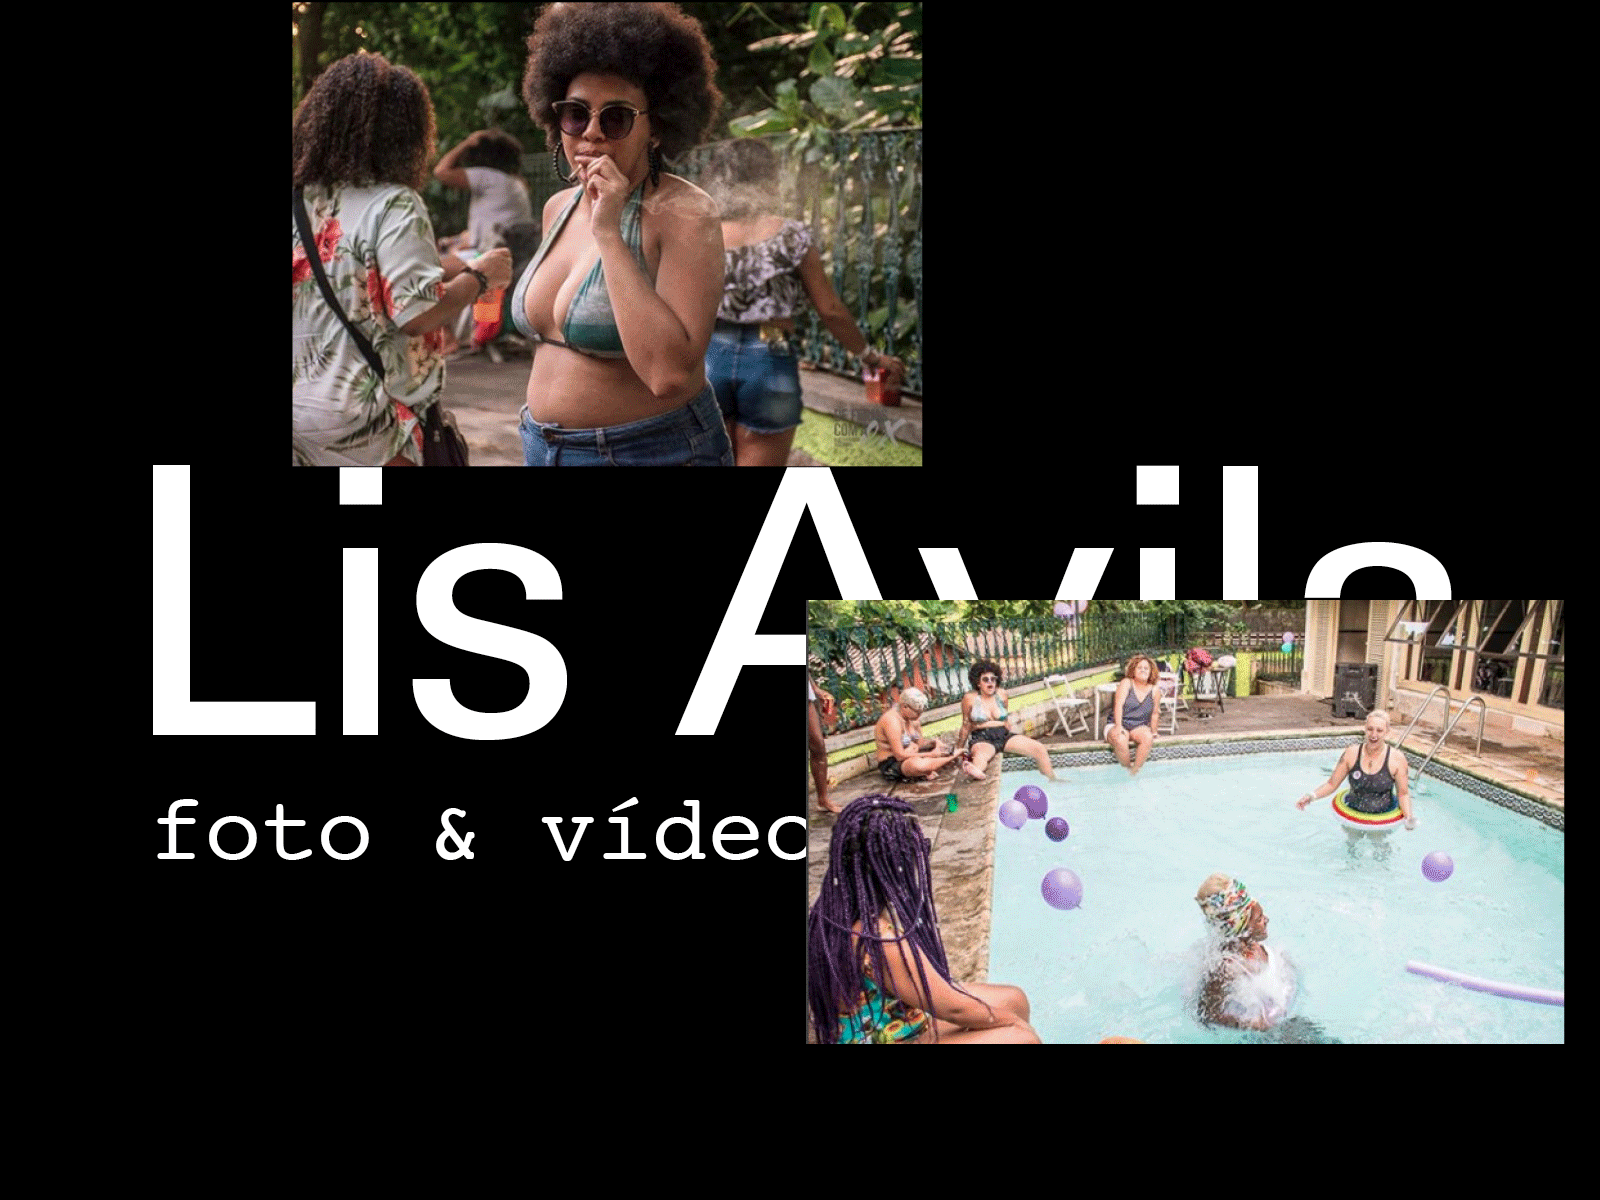 Liz Avila foto & video